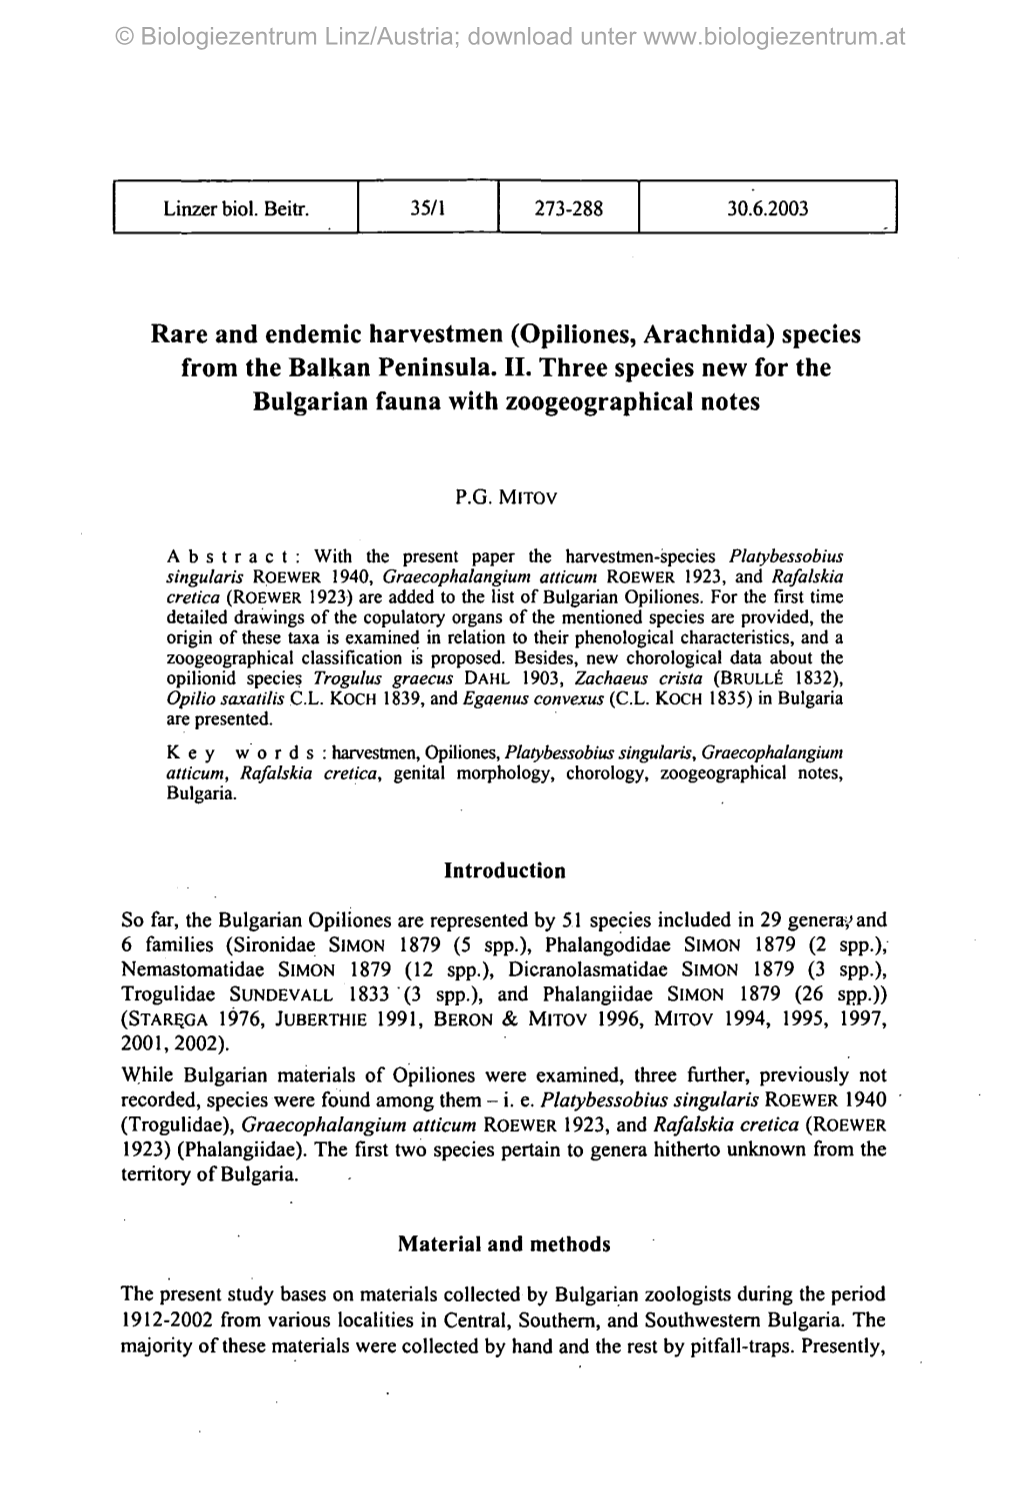 (Opiliones, Arachnida) Species from the Balkan Peninsula. II